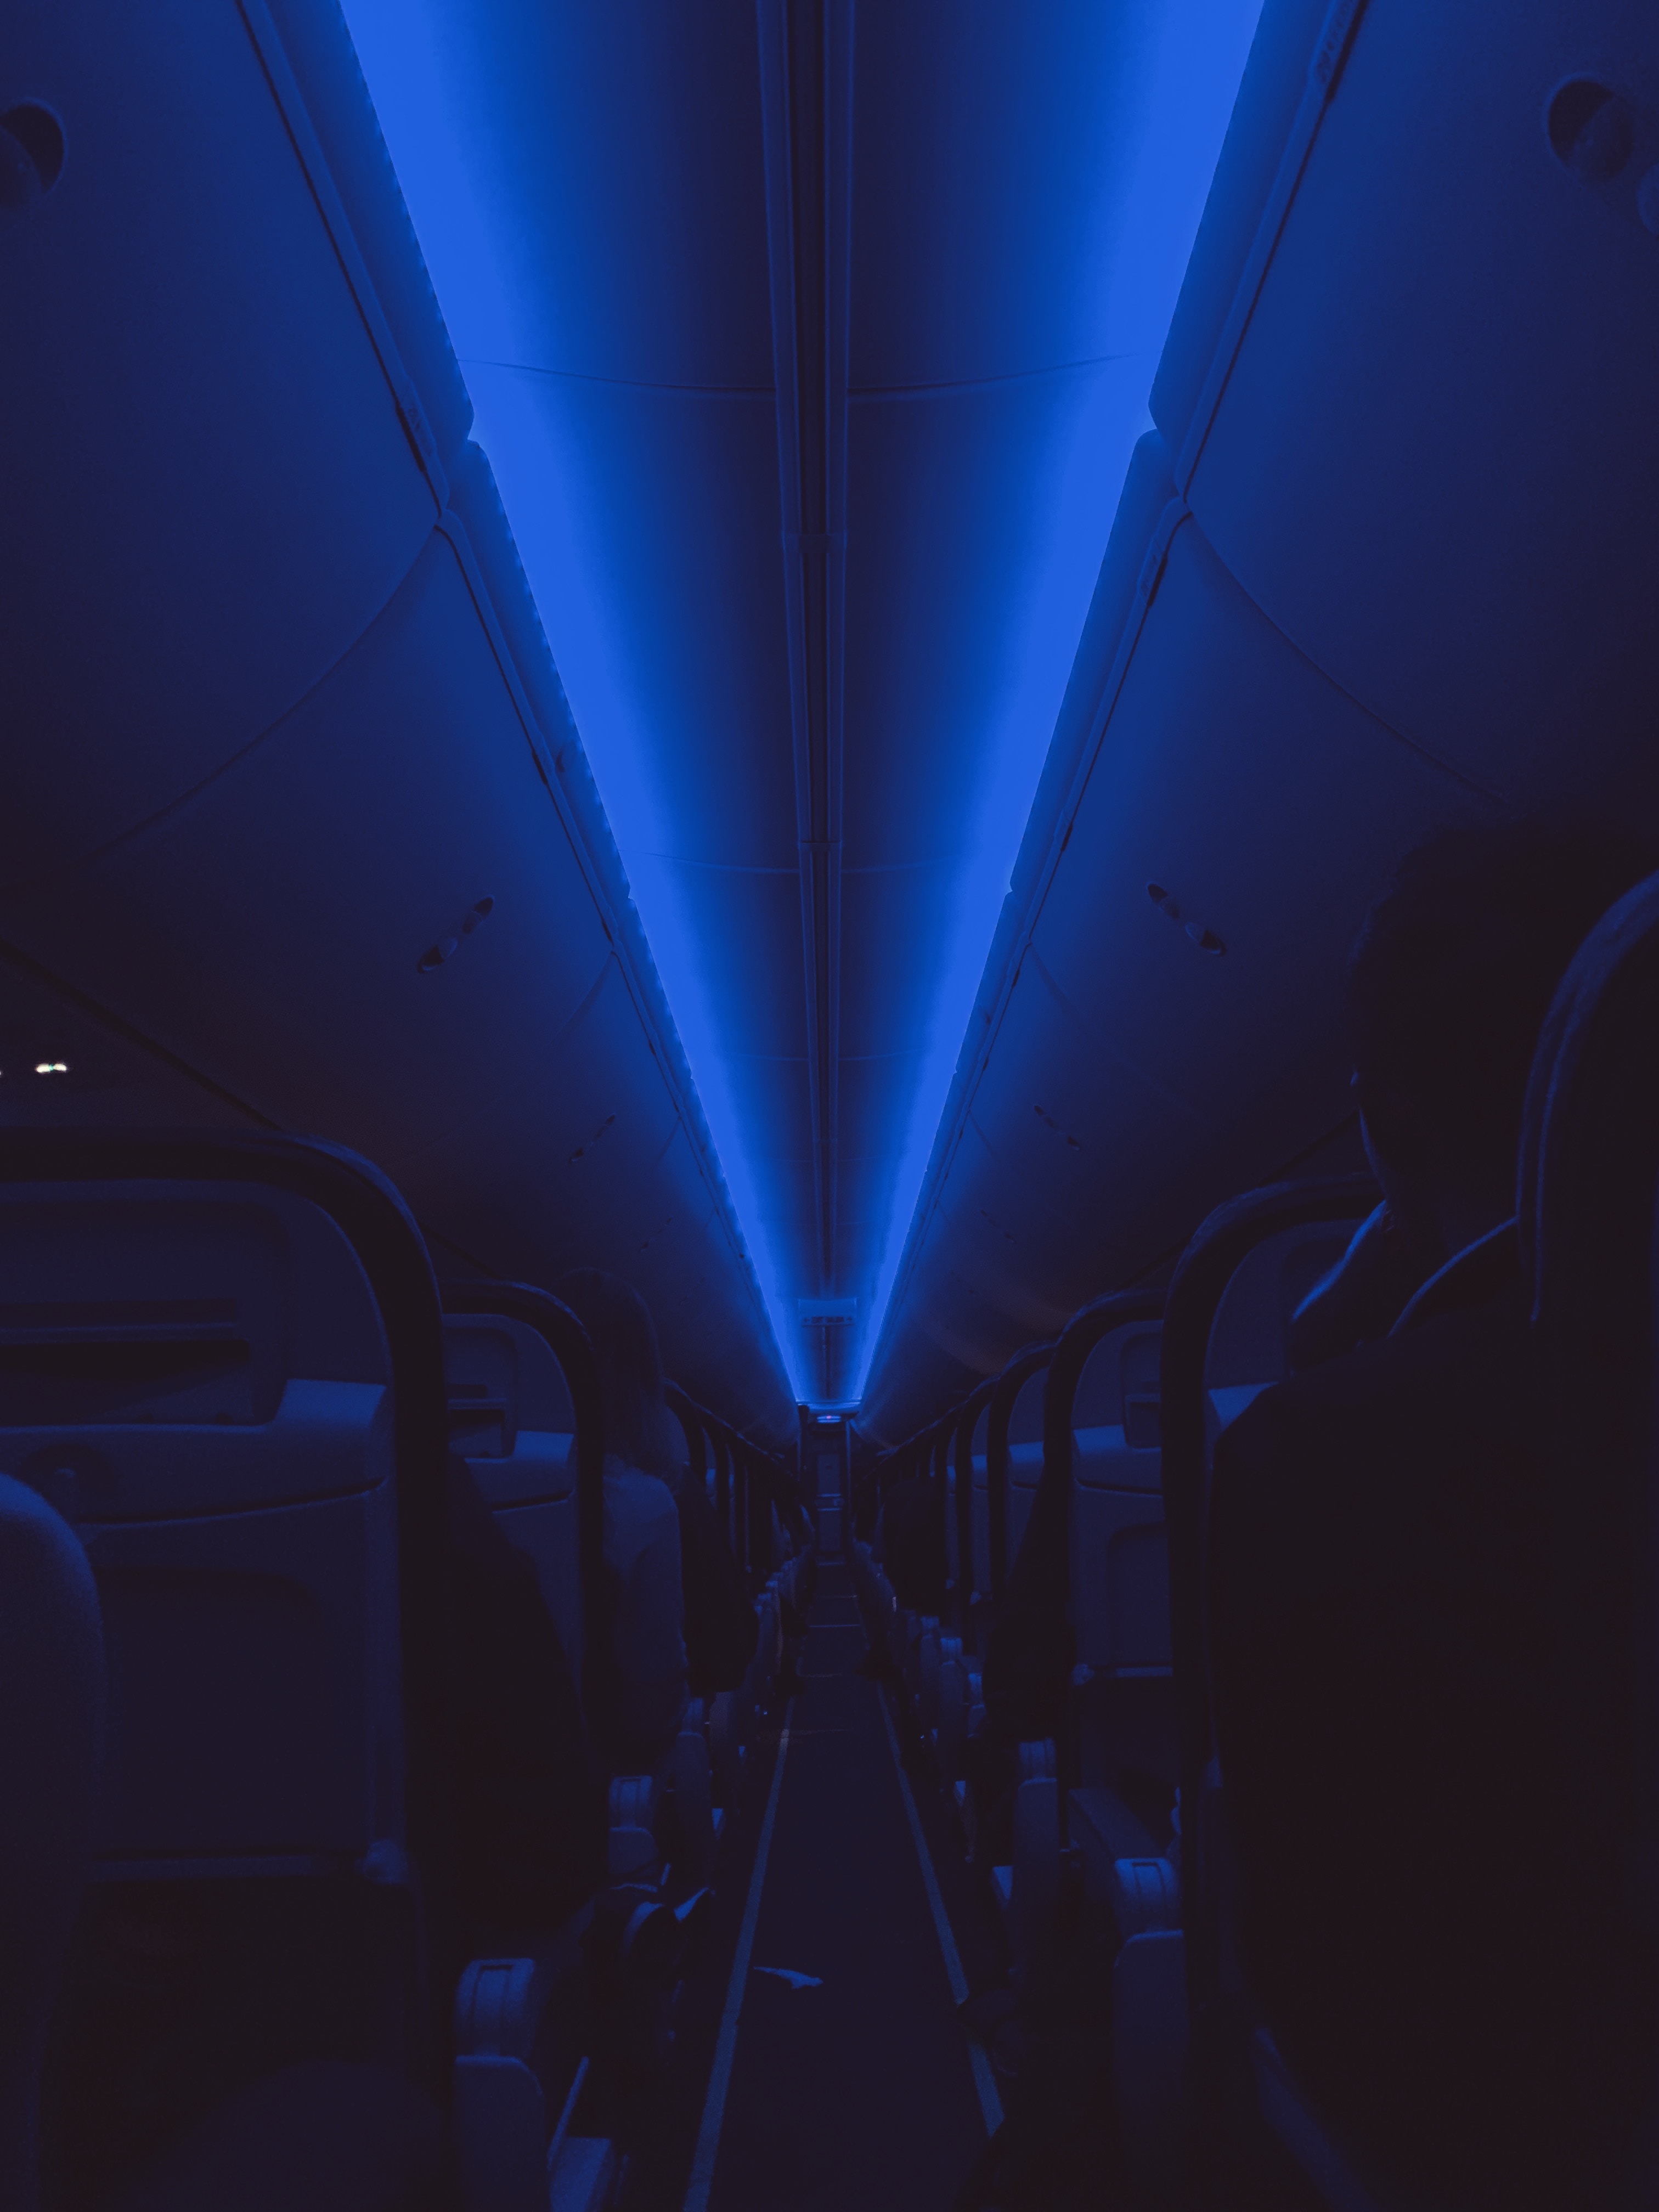 backlight, dark, illumination, board, ceiling, cabin 2160p